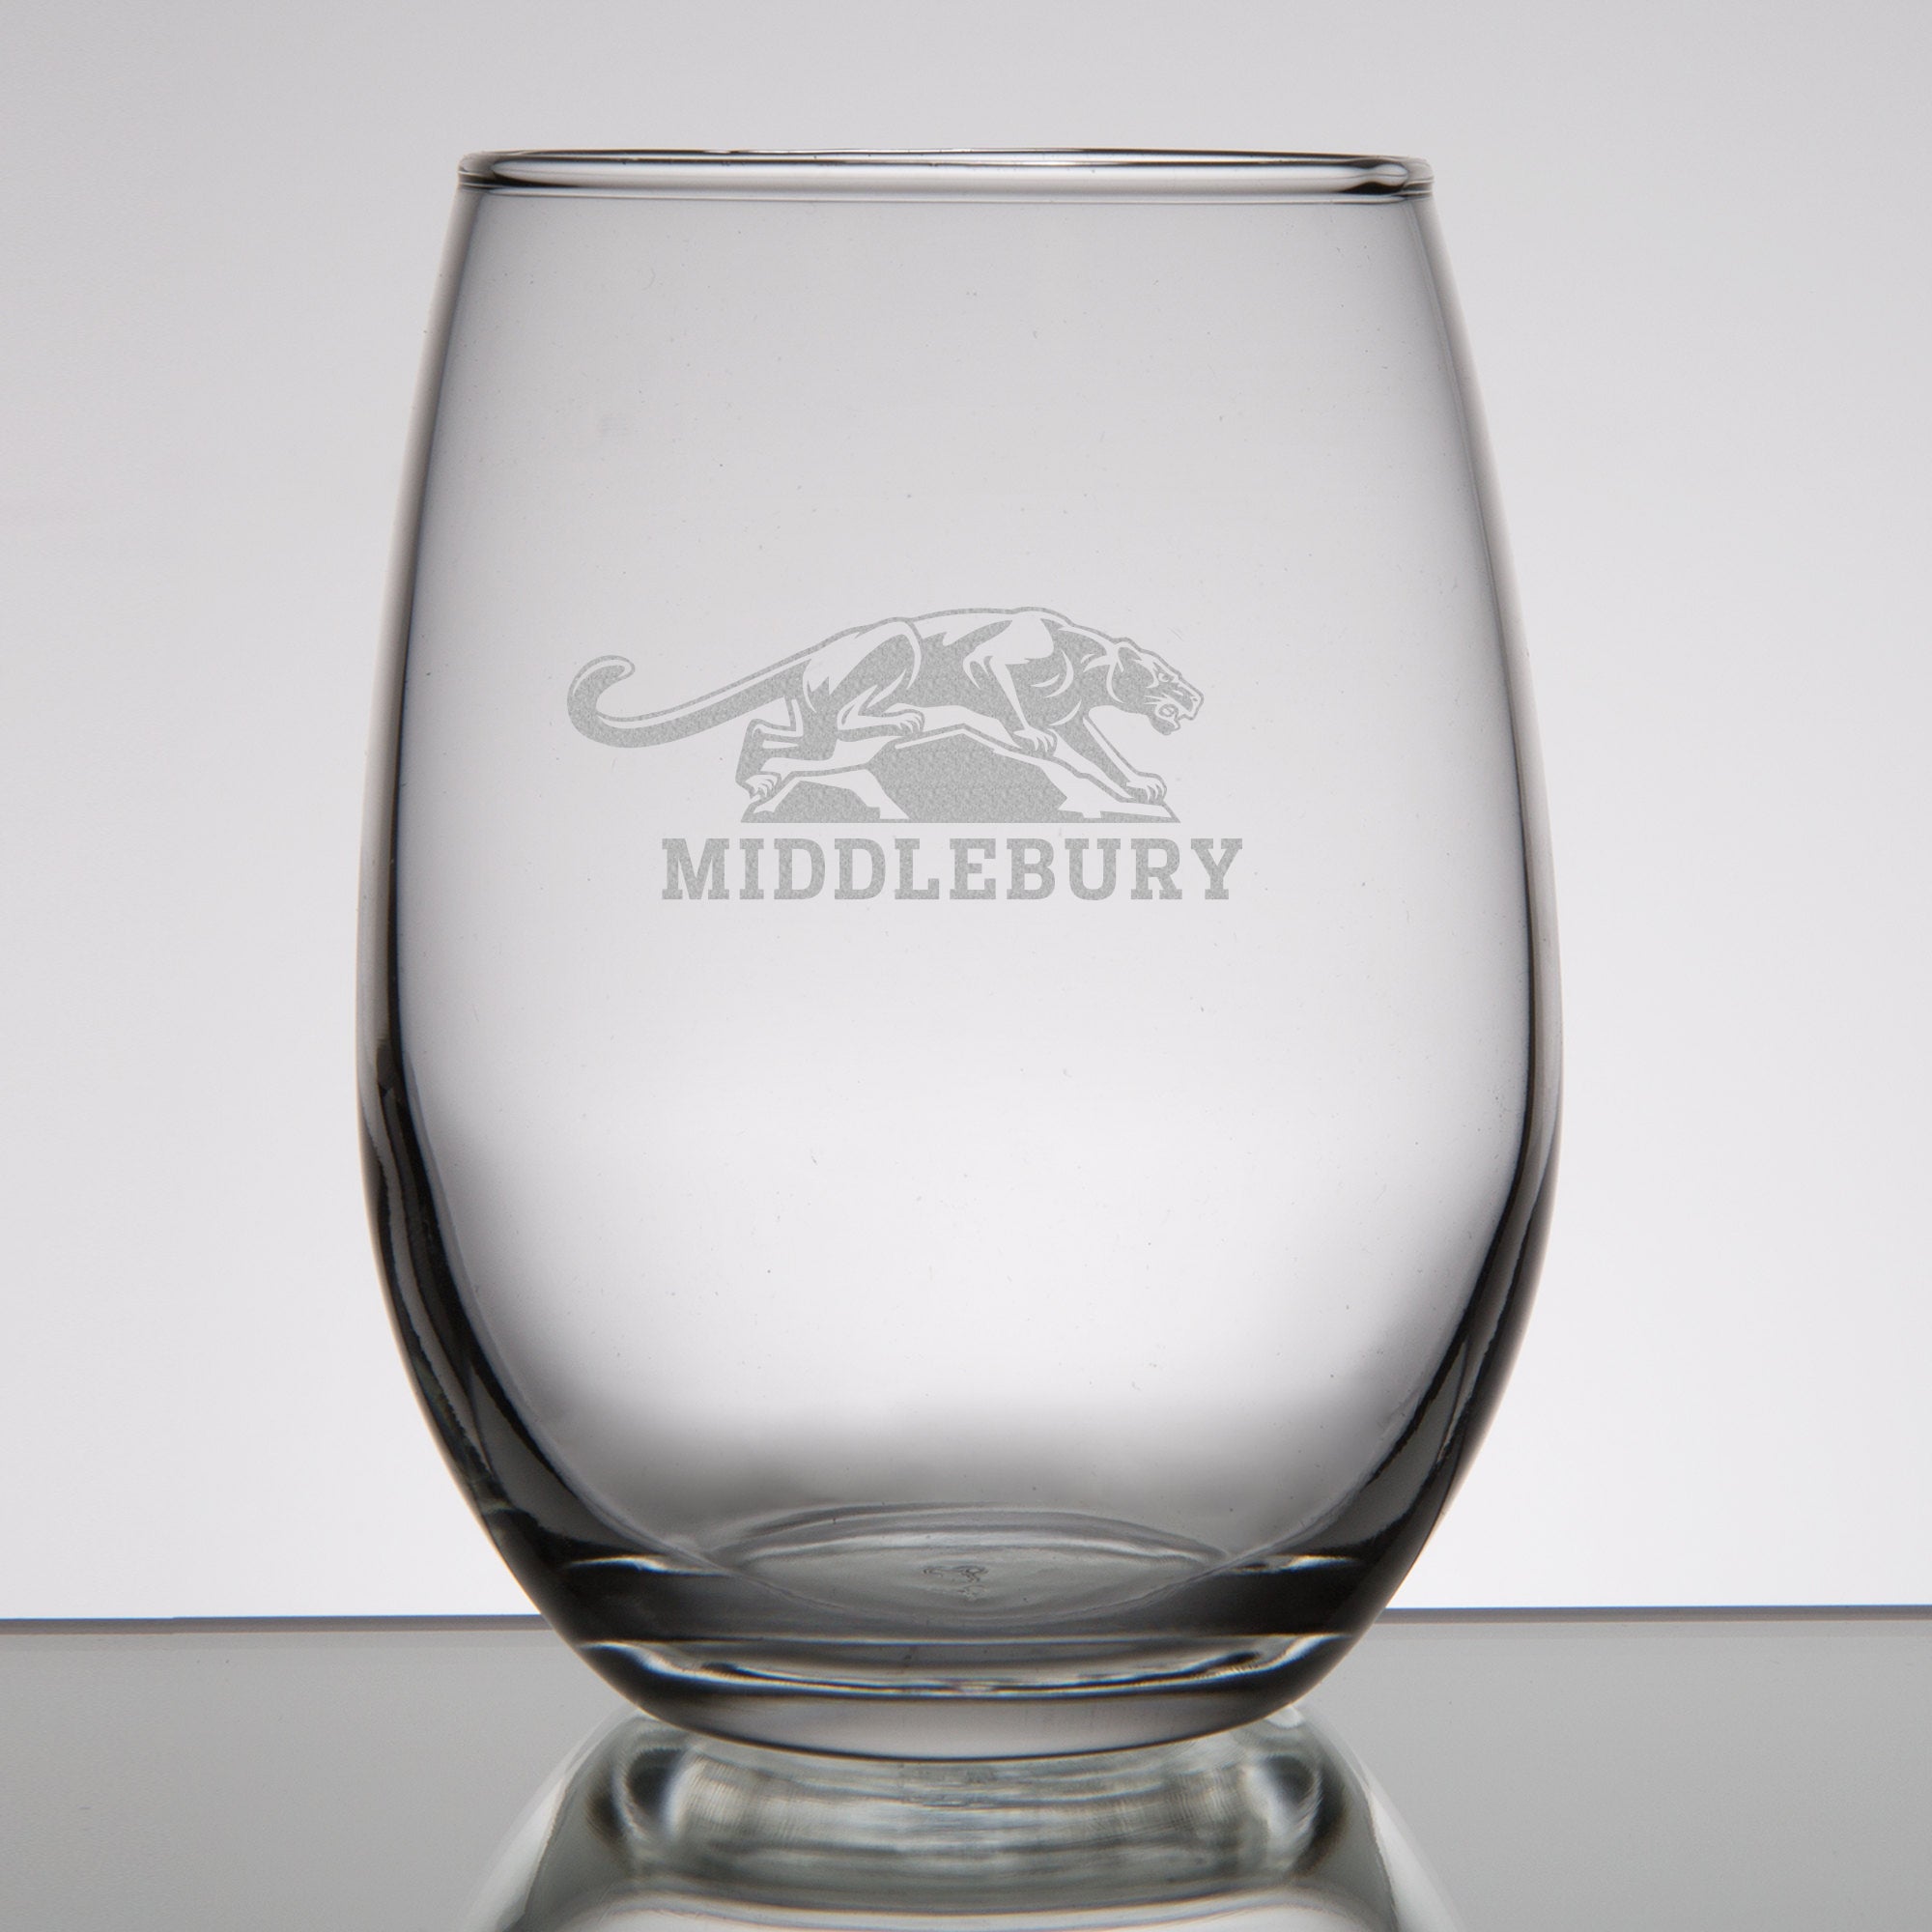 21oz Stemless Wine Glass - Middlebury